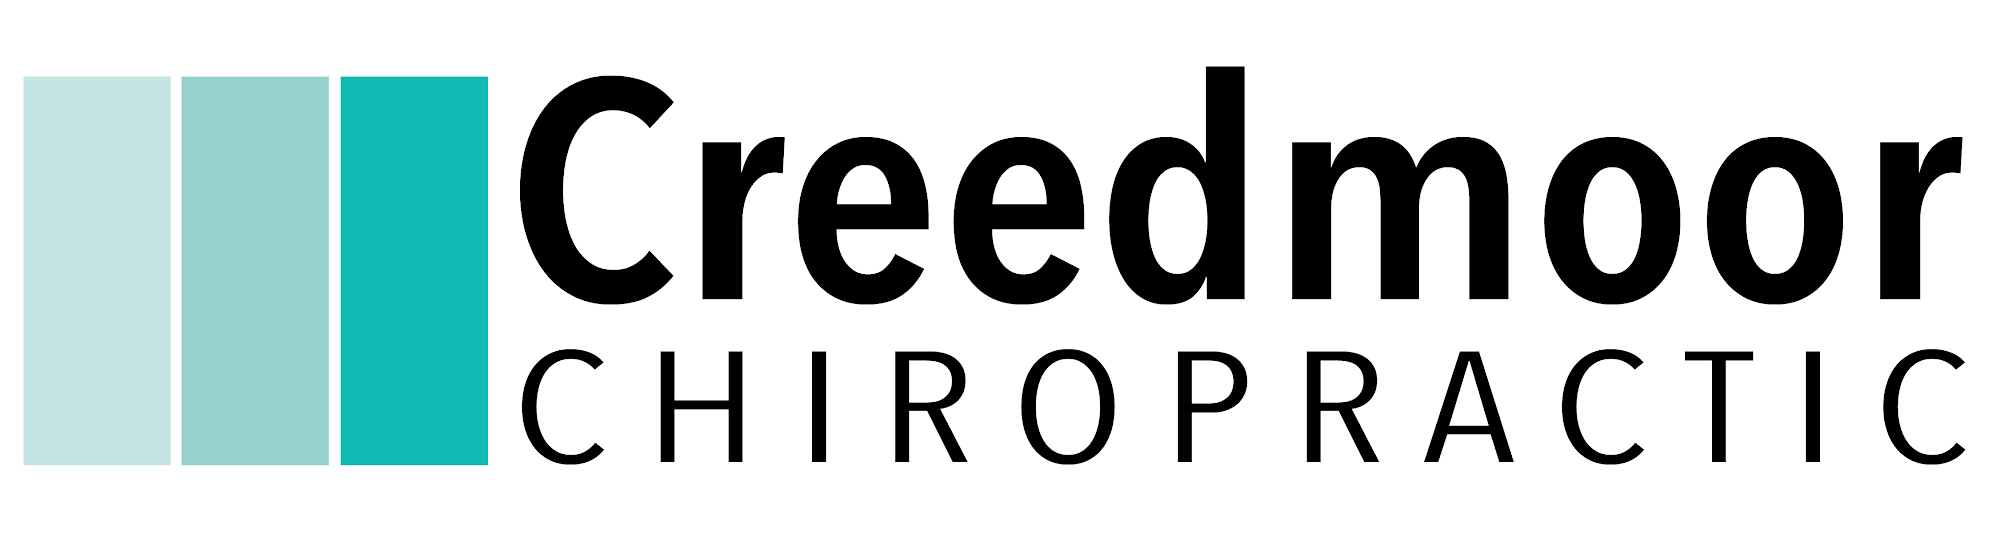 Creedmoor Chiropractic